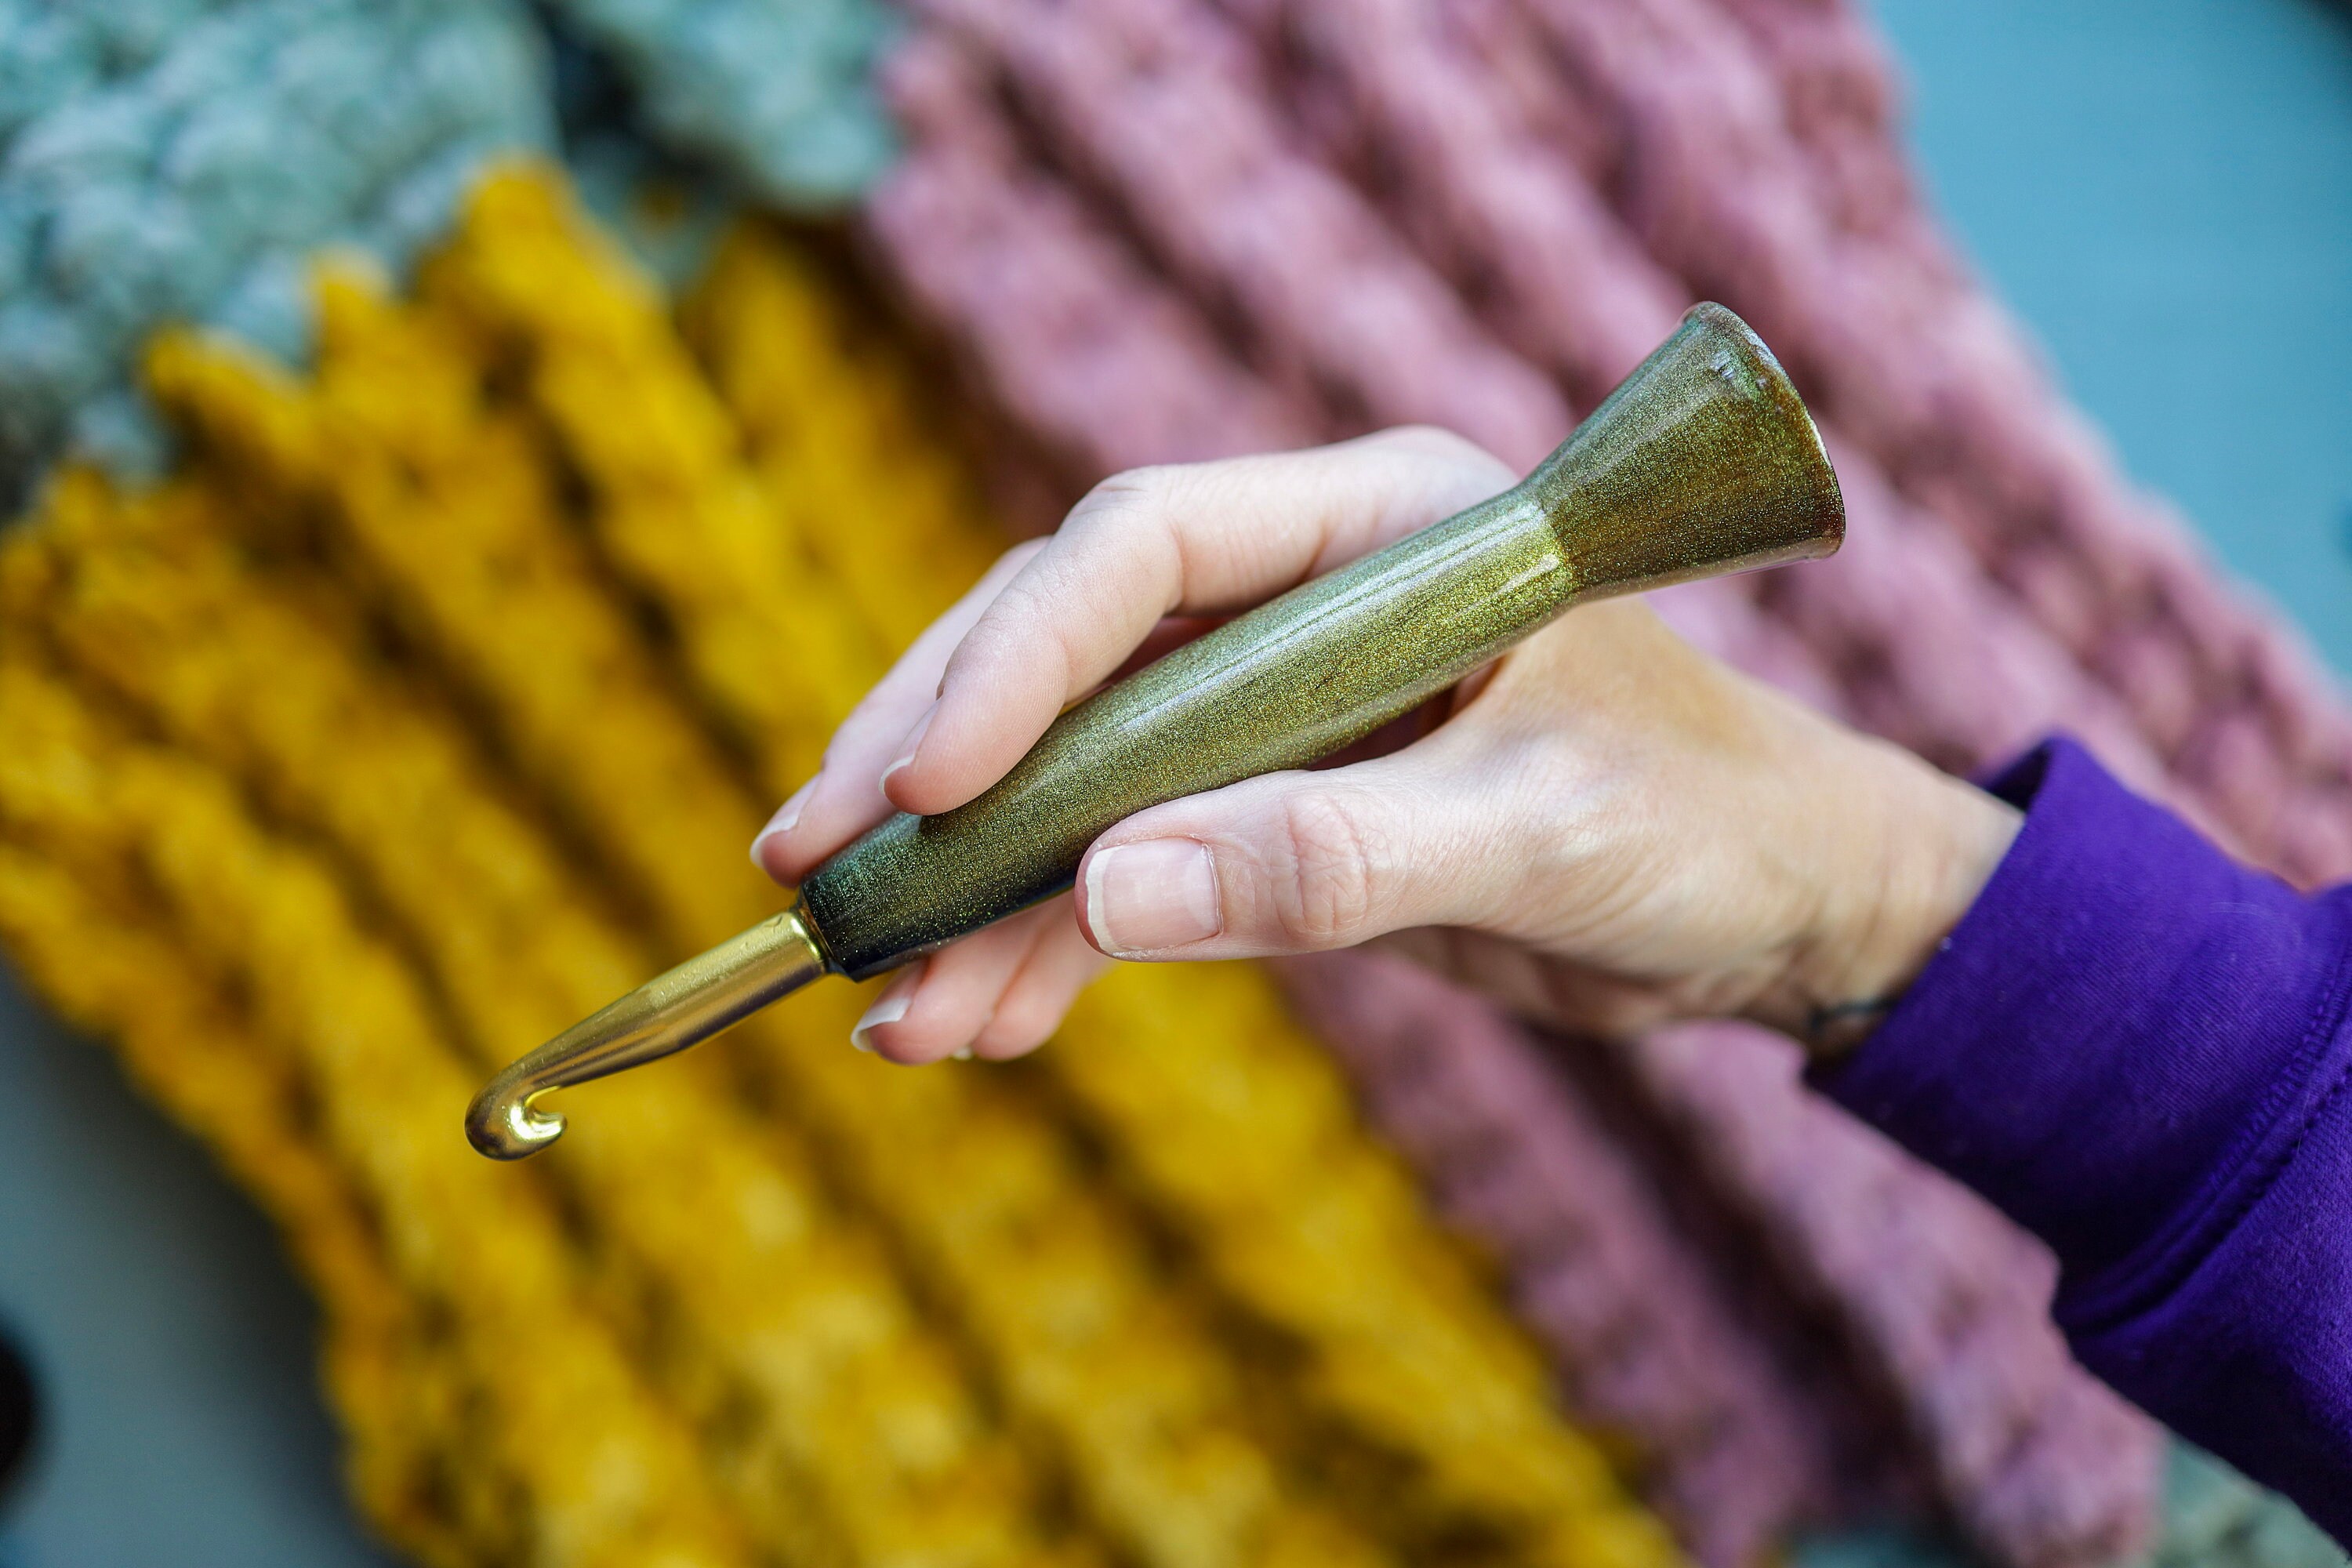 10mm Ergonomic Crochet Hook, 3D Printed Hybrid Tapered Style Boye Metal  Crochet Hook, Solar Flare Cosmos Edition, Gift for Crocheter 